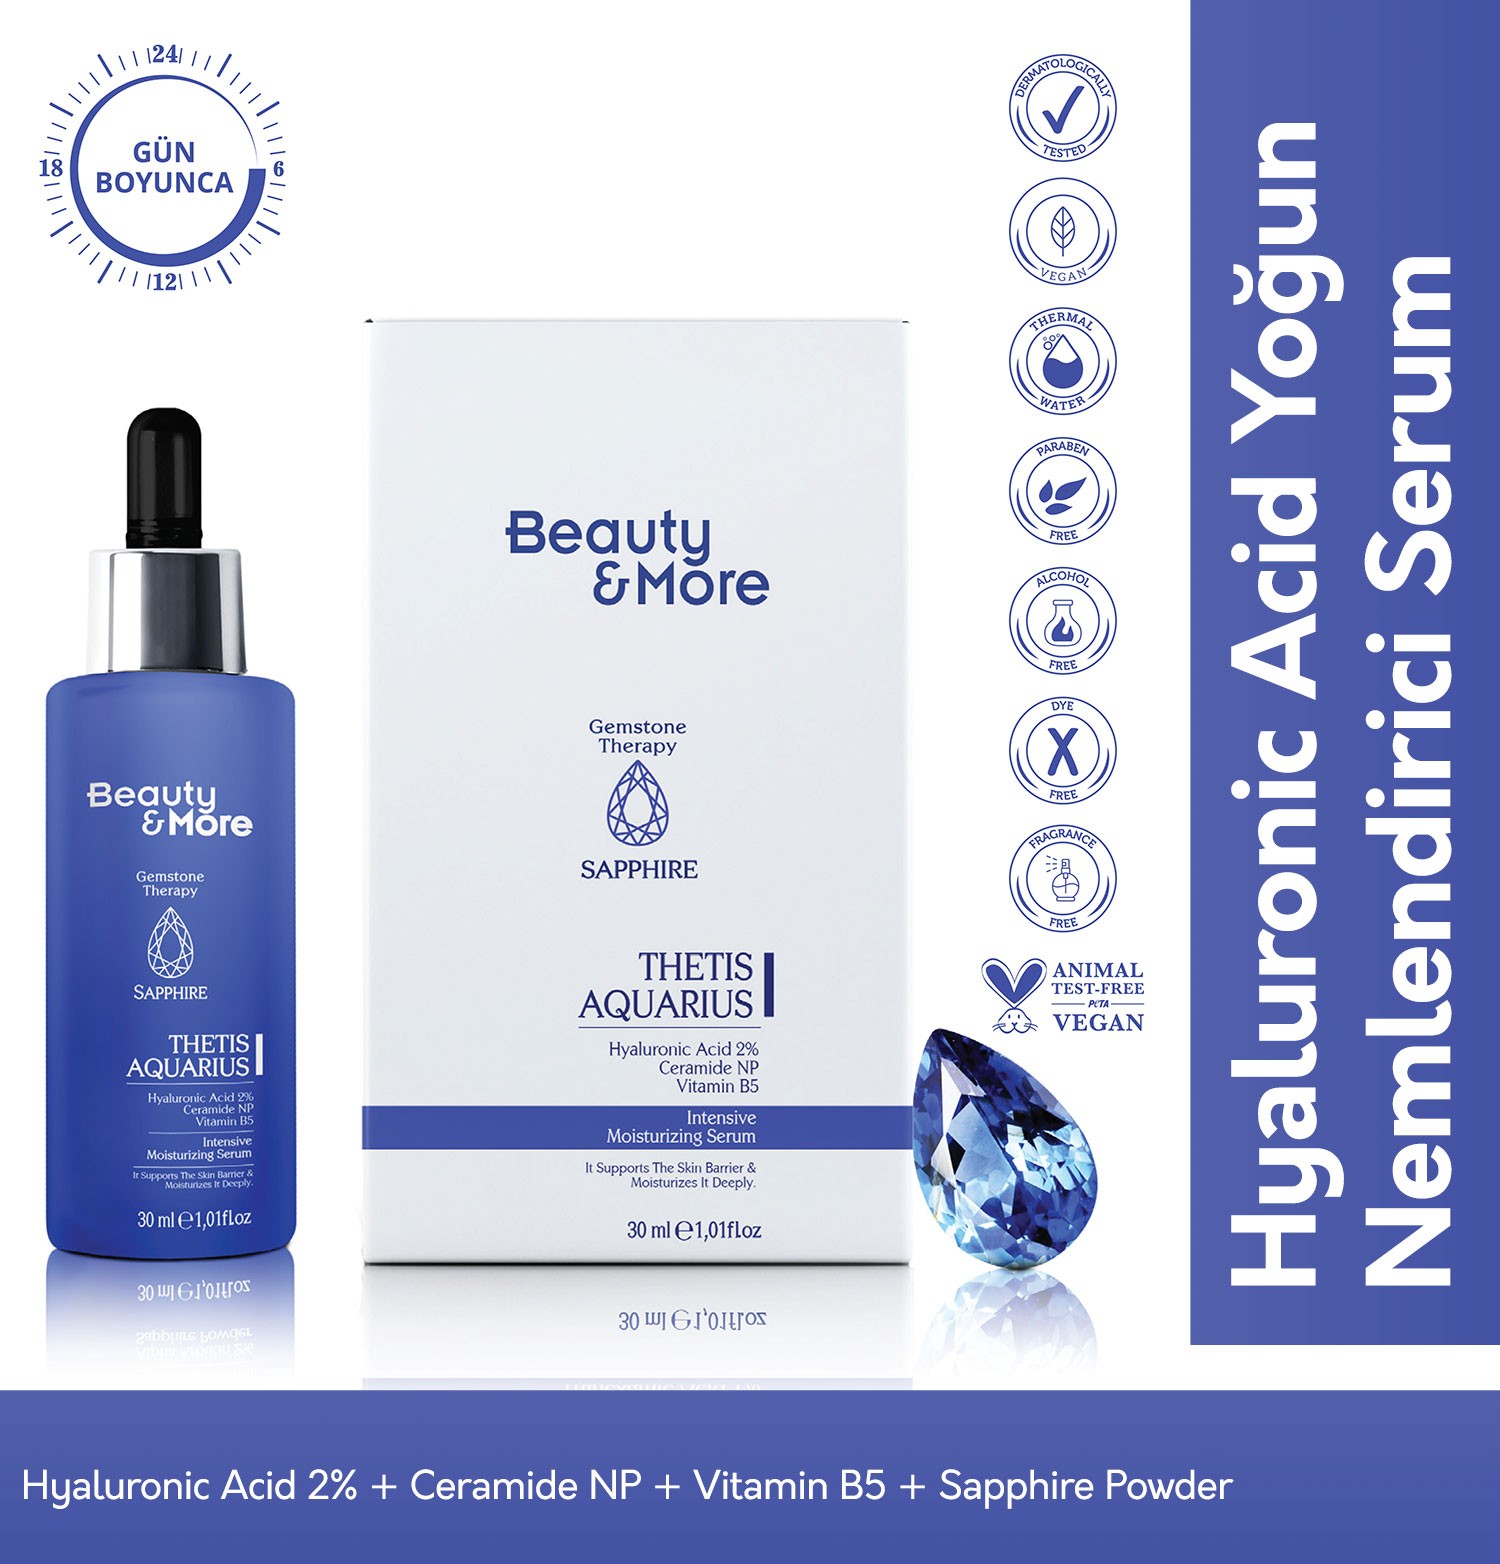 Beauty&More Safir Thetis Aquarius Yoğun Nemlendirici Serum 30 ml